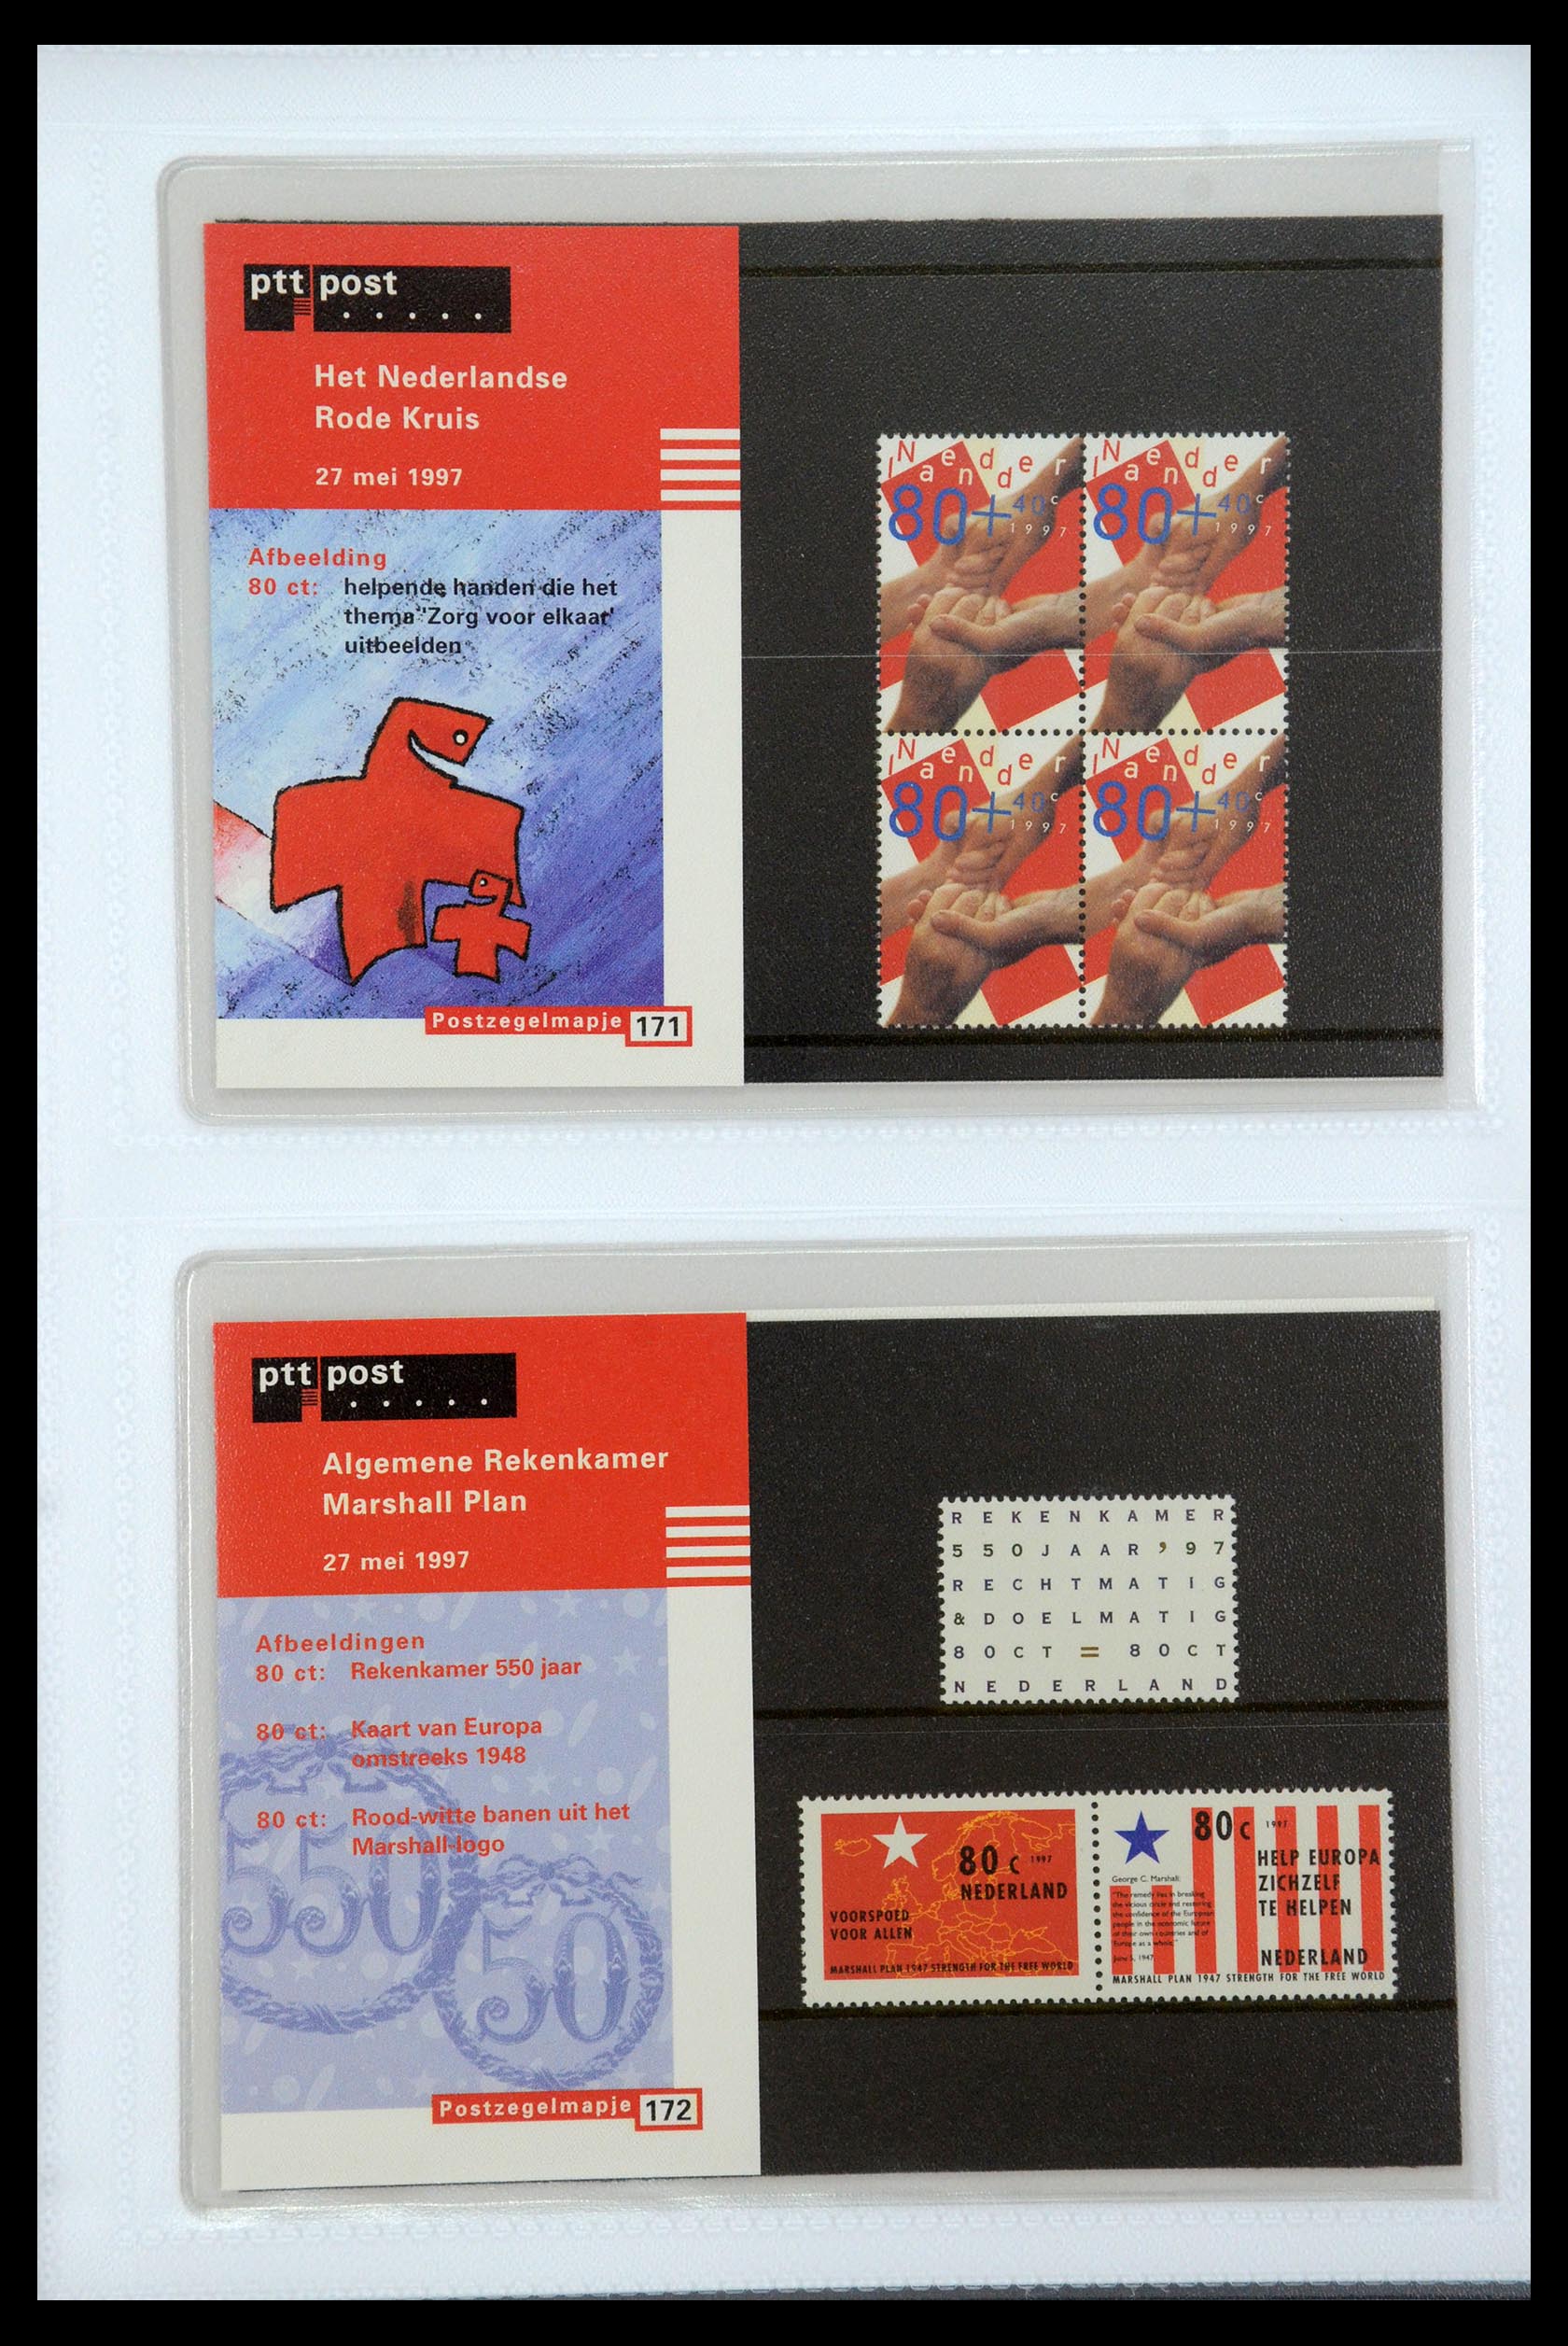 35947 089 - Stamp Collection 35947 Netherlands PTT presentation packs 1982-2019!